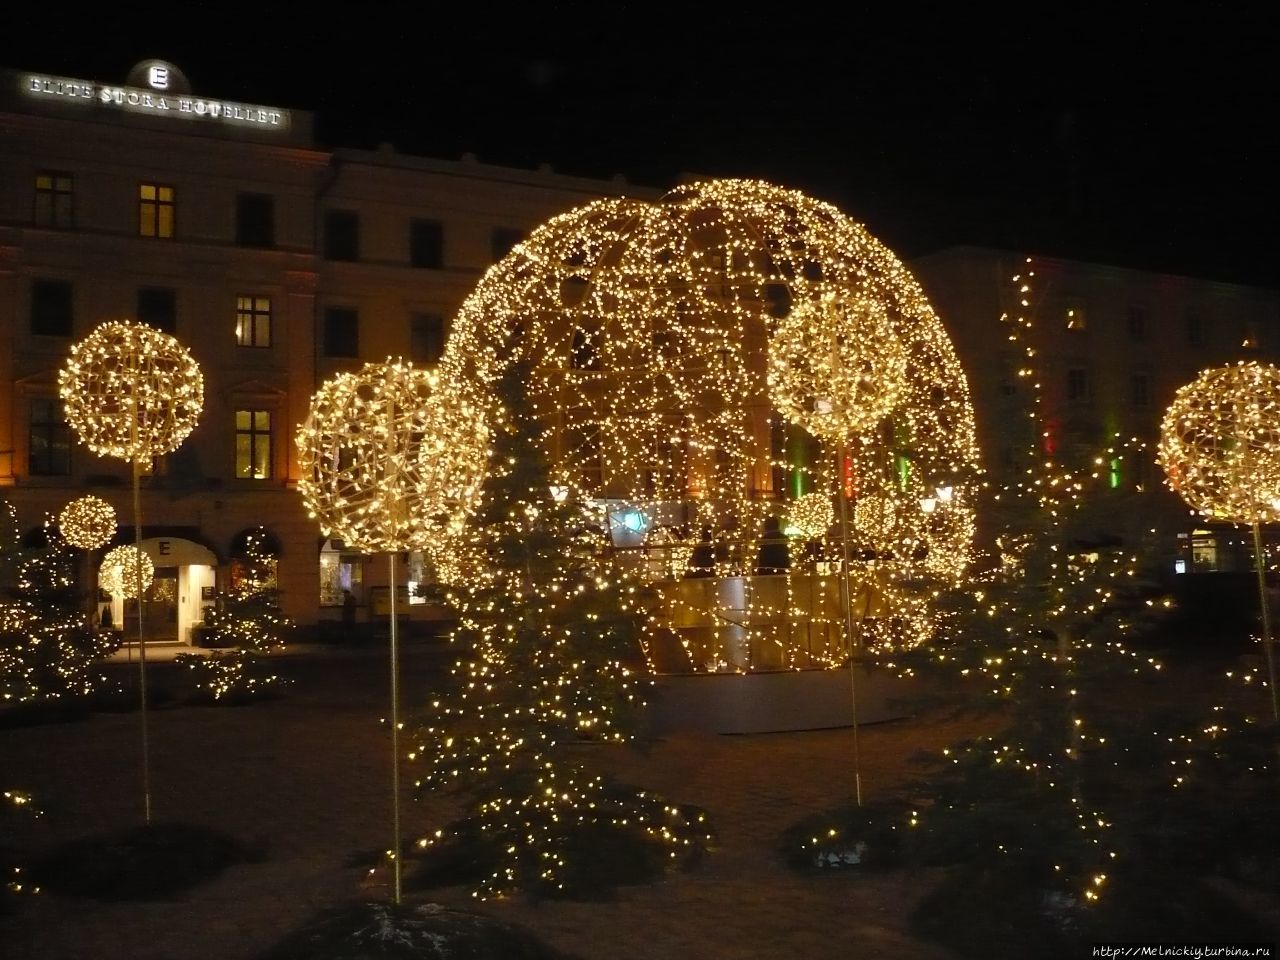 Рождественский (православный) вечер в Линчёпинге Линчёпинг, Швеция